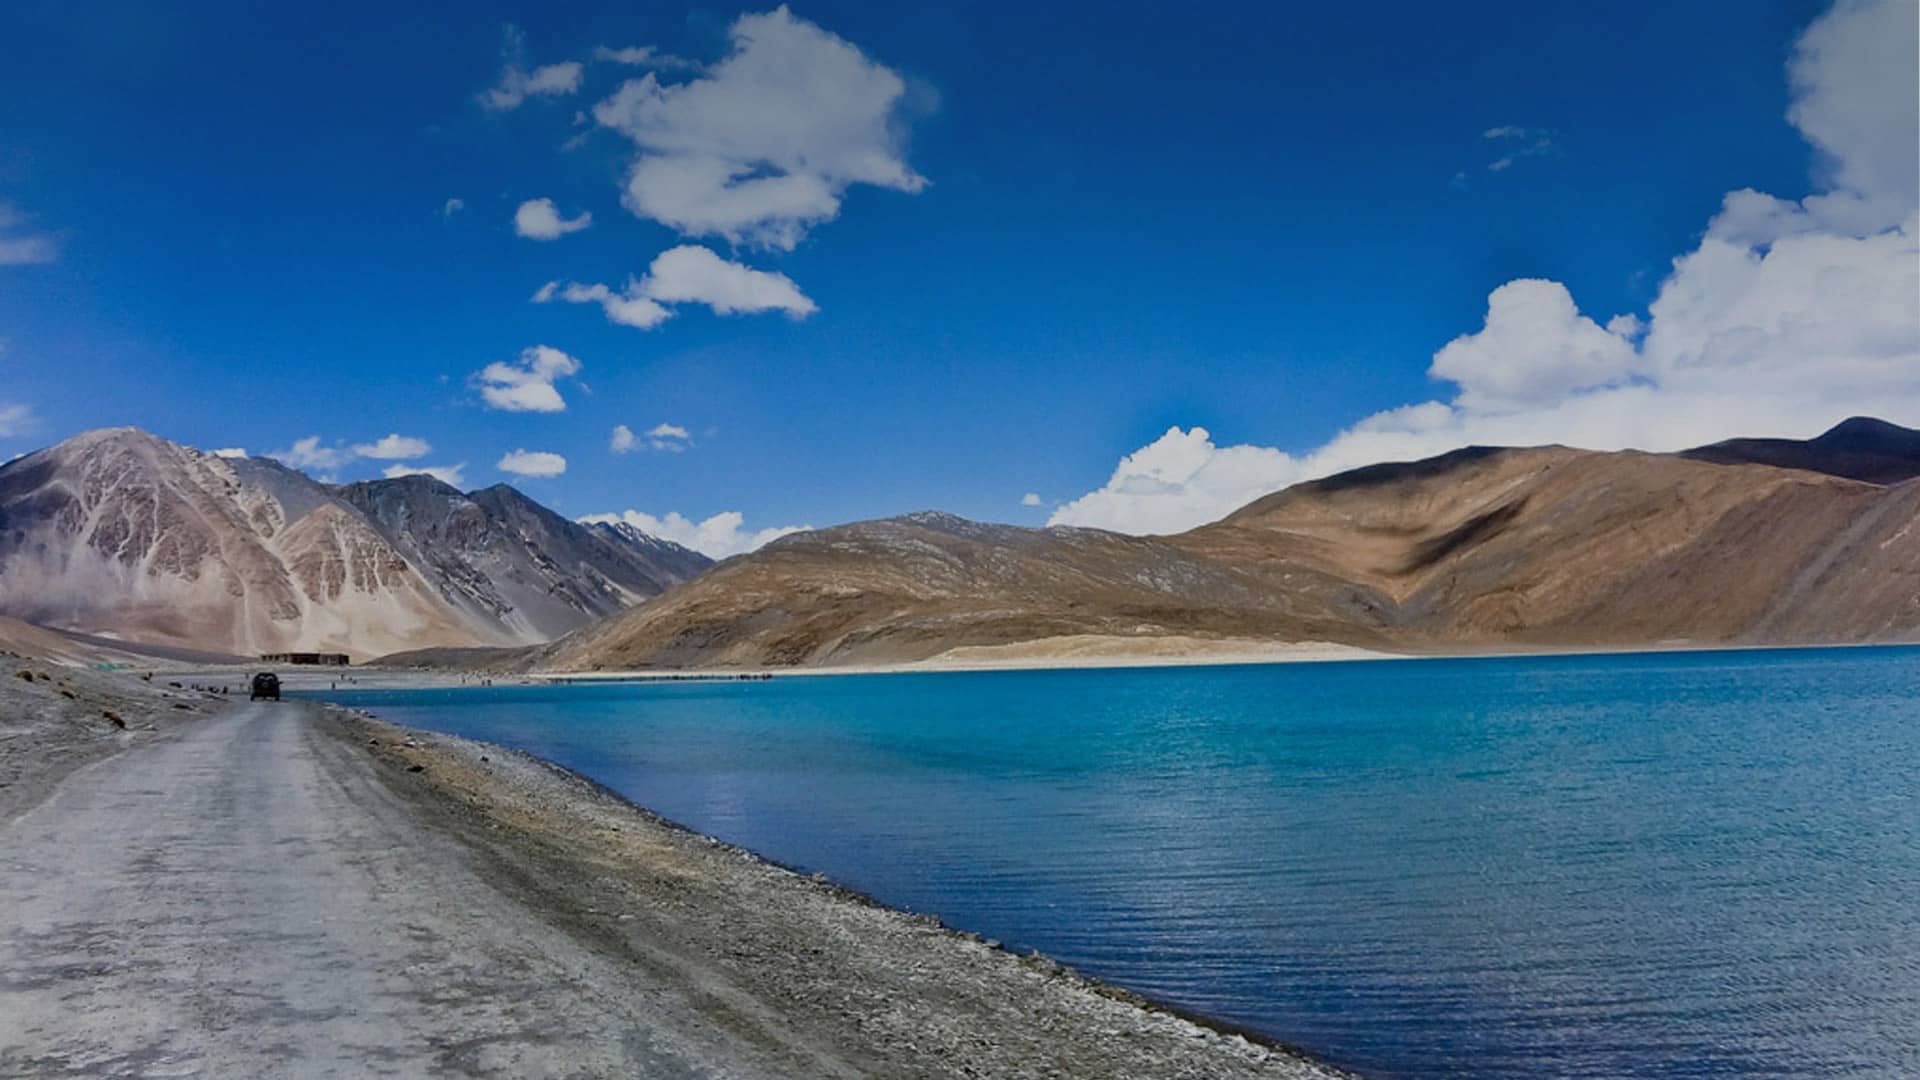 Leh Ladakh India